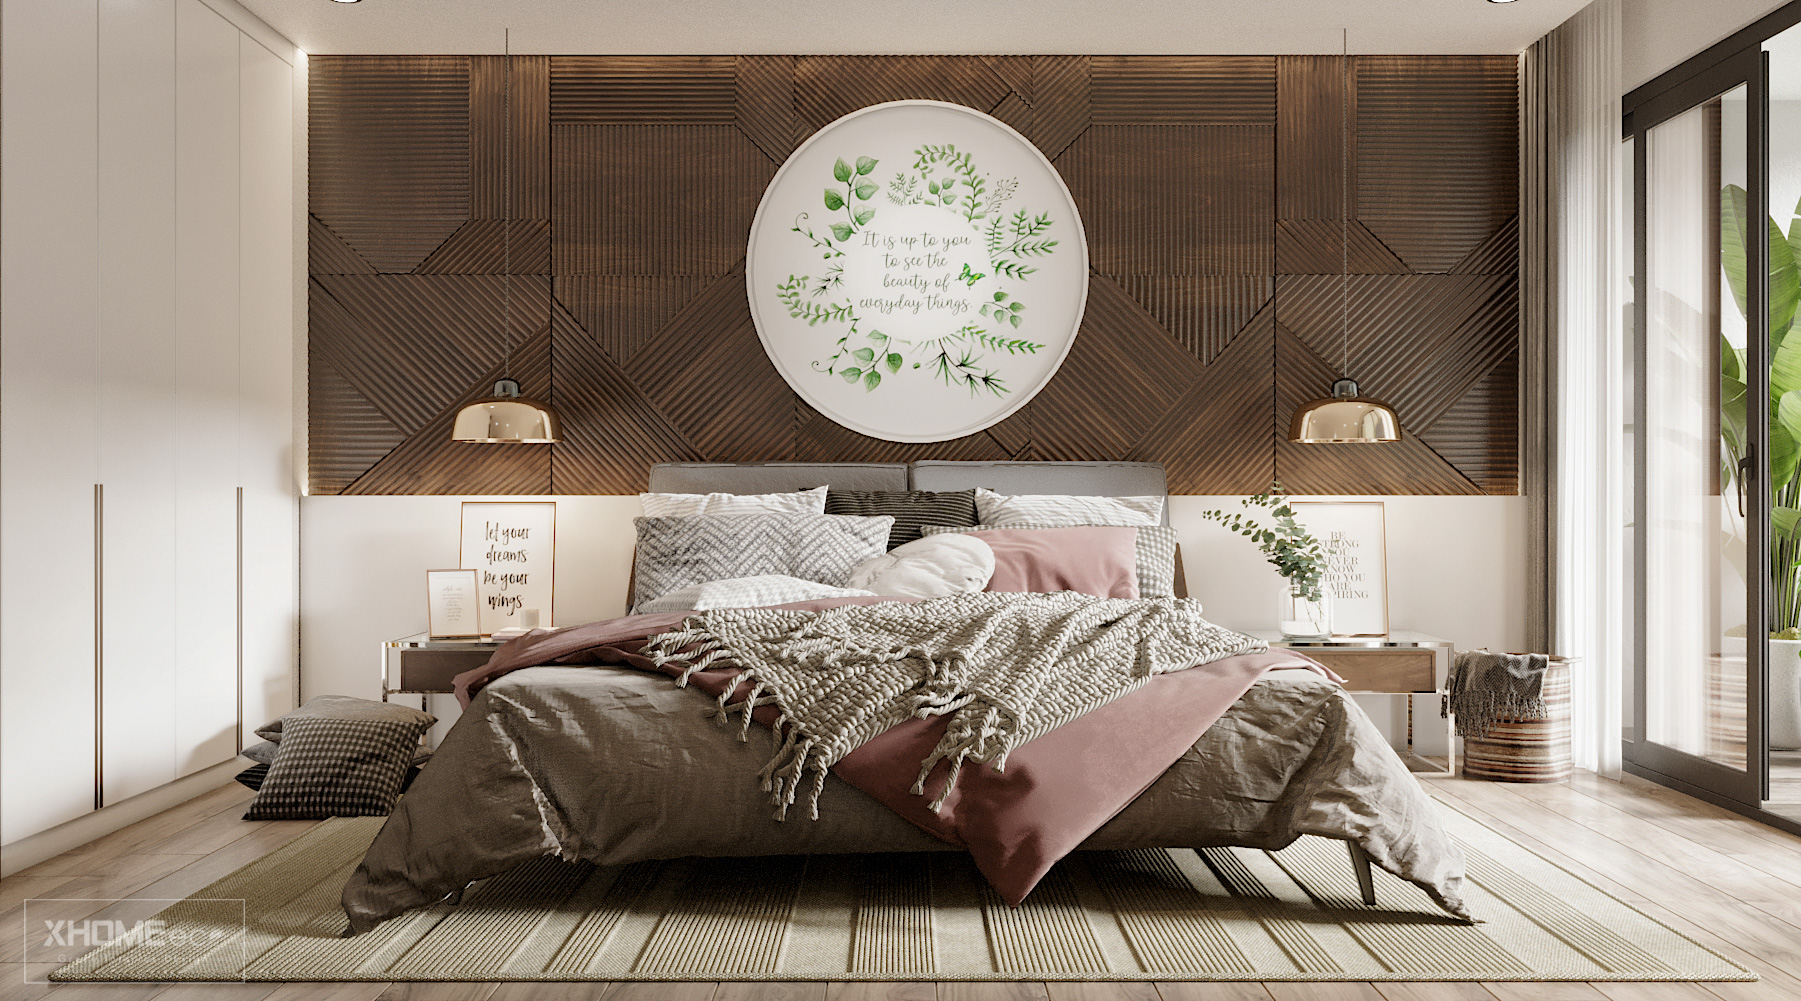  Phòng ngủ mang phong cách mộng mơ